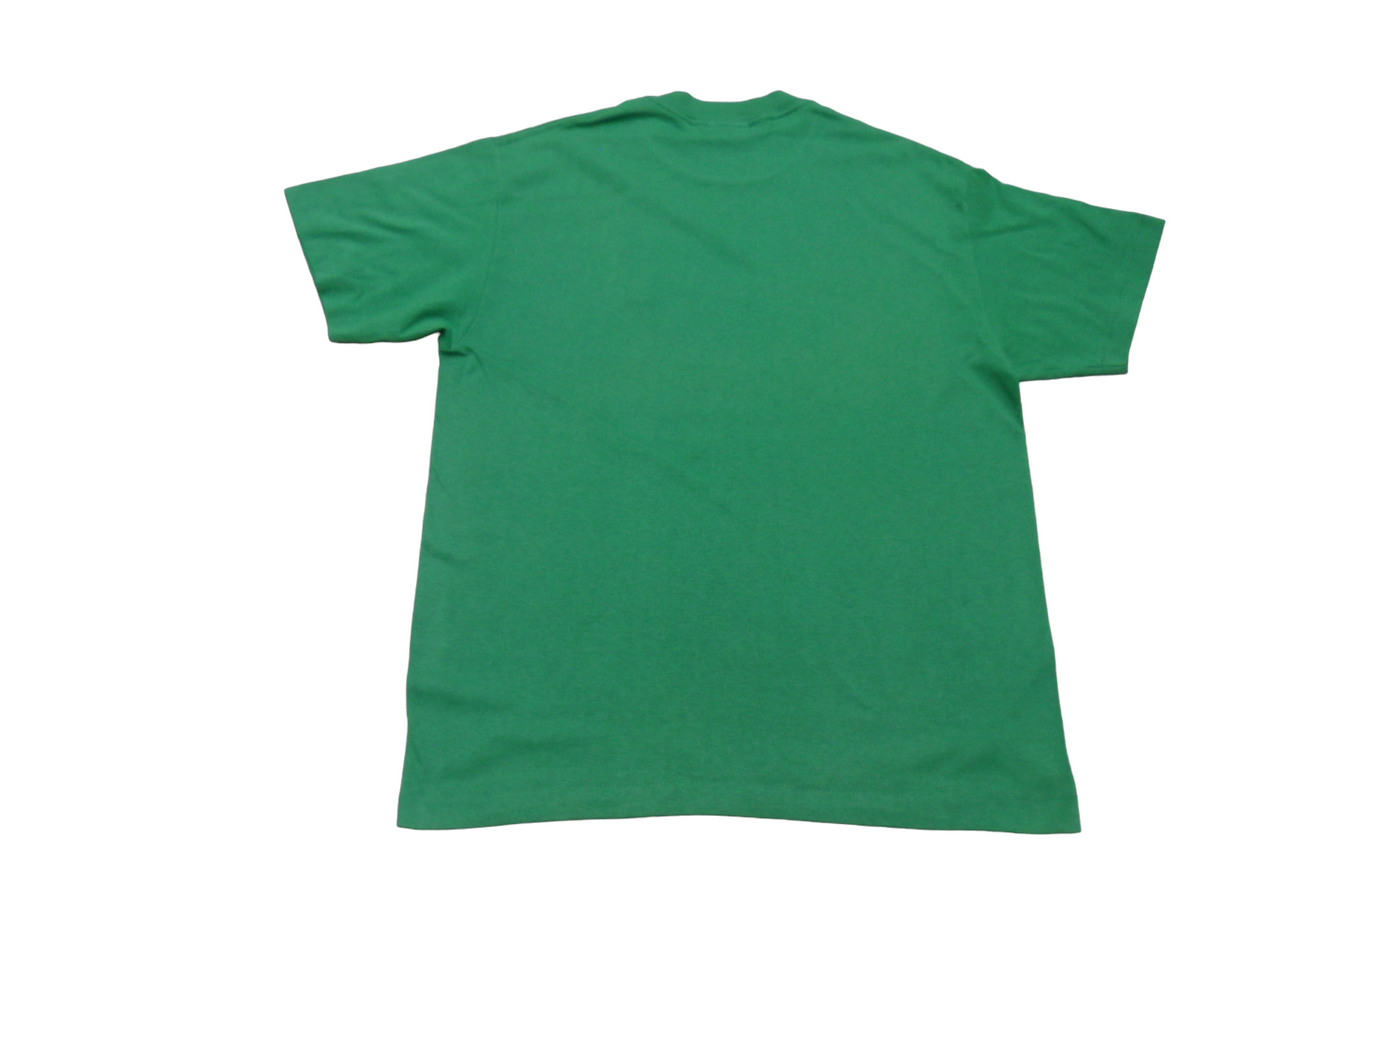 Vintage SELEC-T Green Polycotton Women's T-Shirt Size-L